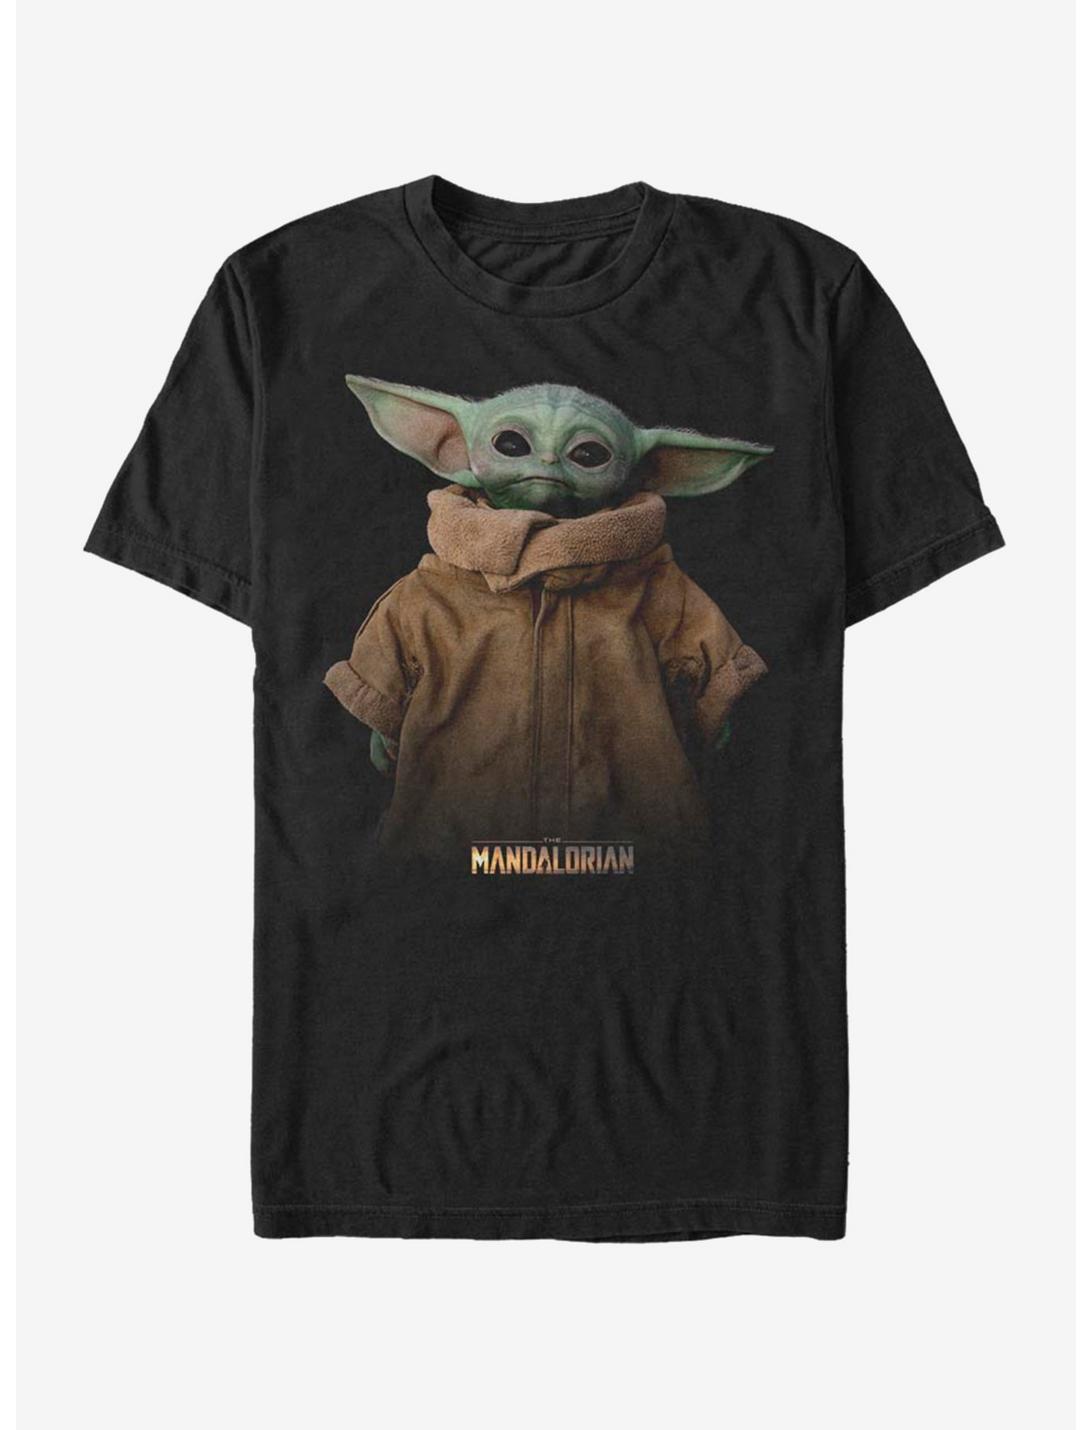 Star Wars The Mandalorian The Child Full Size T-Shirt, BLACK, hi-res